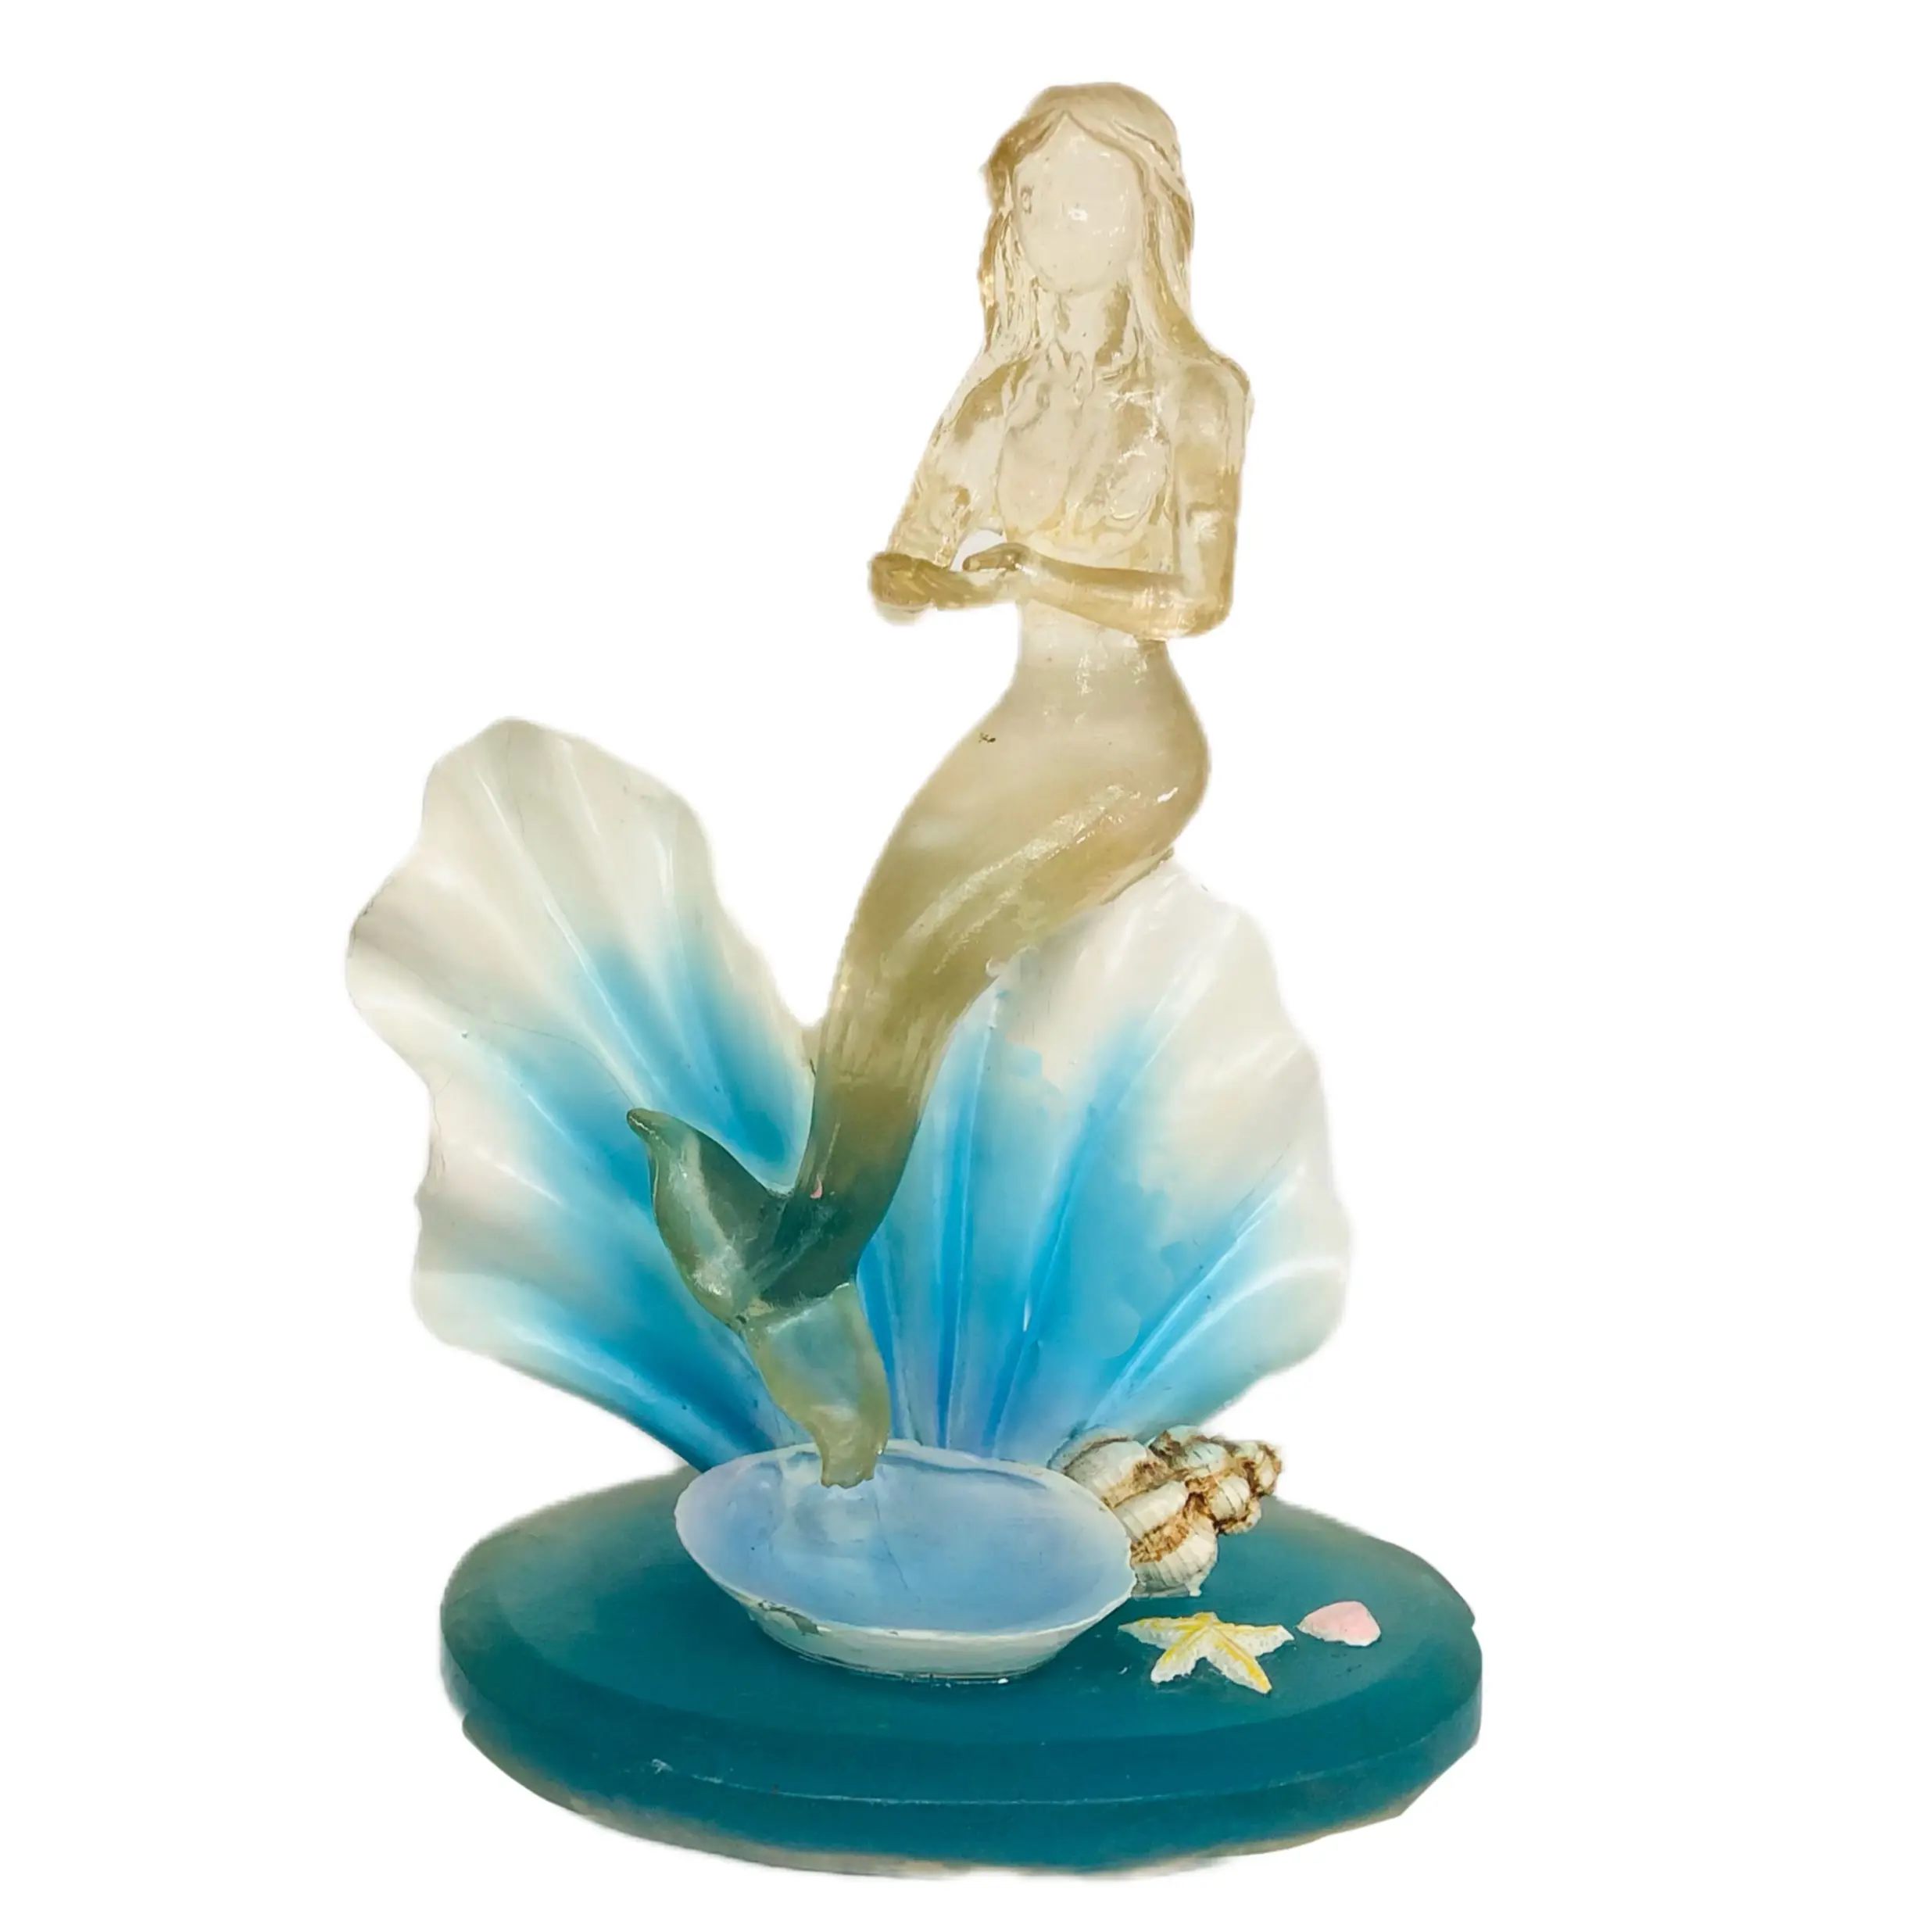 Figurina di sirena, figurina ornamento di vita marina statua da collezione modellata in 3D per la decorazione dell'home Office